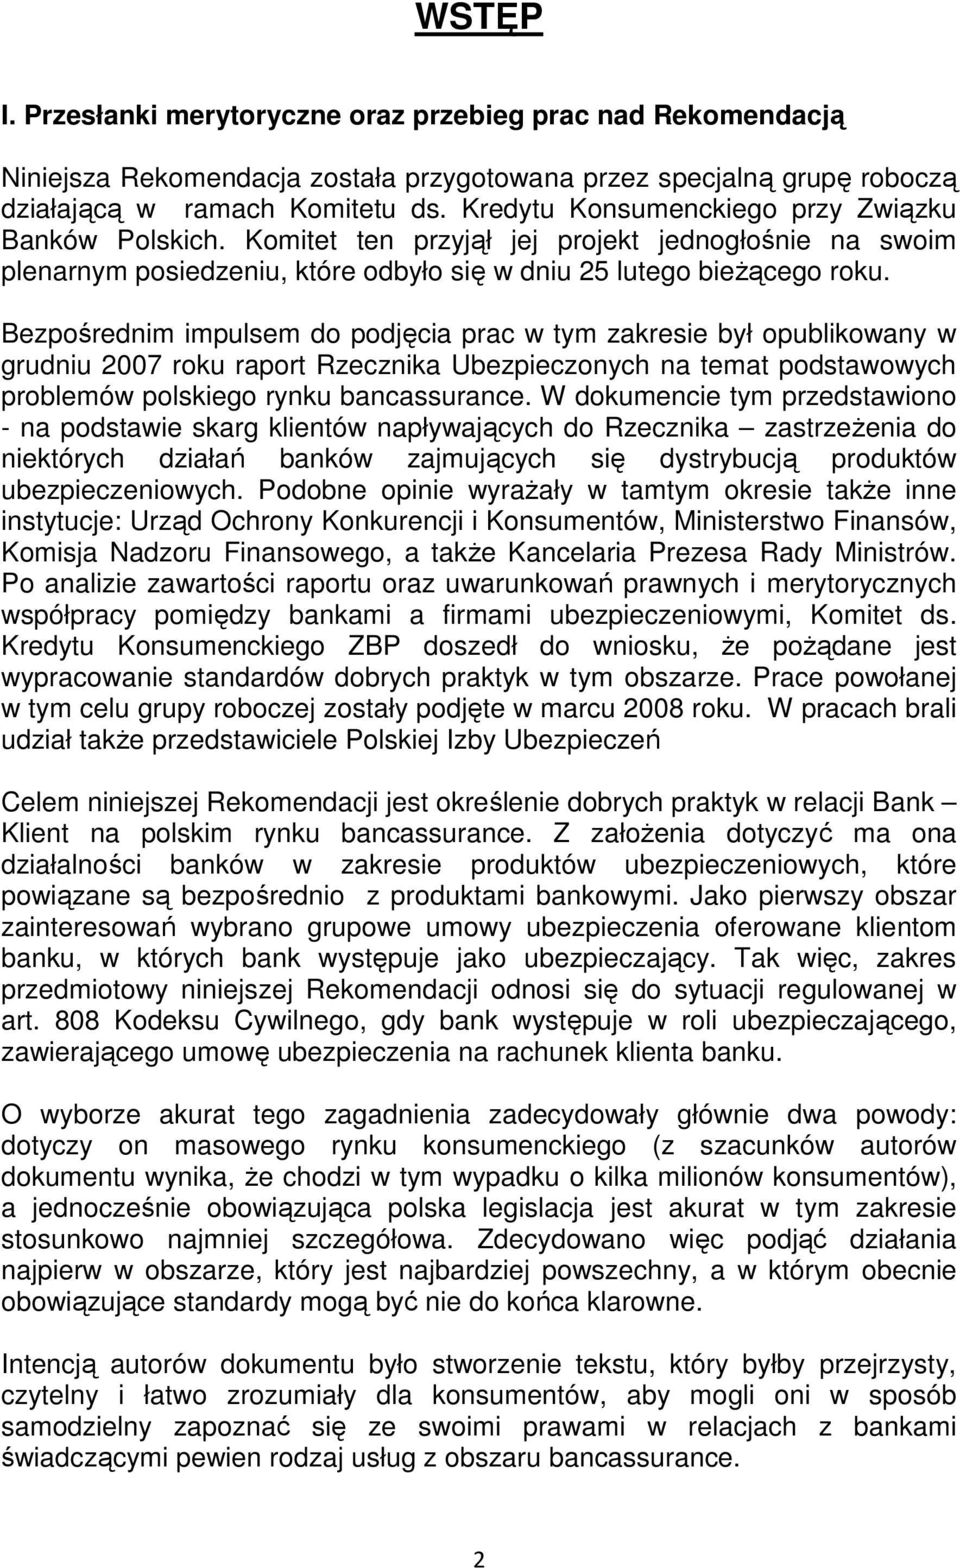 Bezpośrednim impulsem do podjęcia prac w tym zakresie był opublikowany w grudniu 2007 roku raport Rzecznika Ubezpieczonych na temat podstawowych problemów polskiego rynku bancassurance.